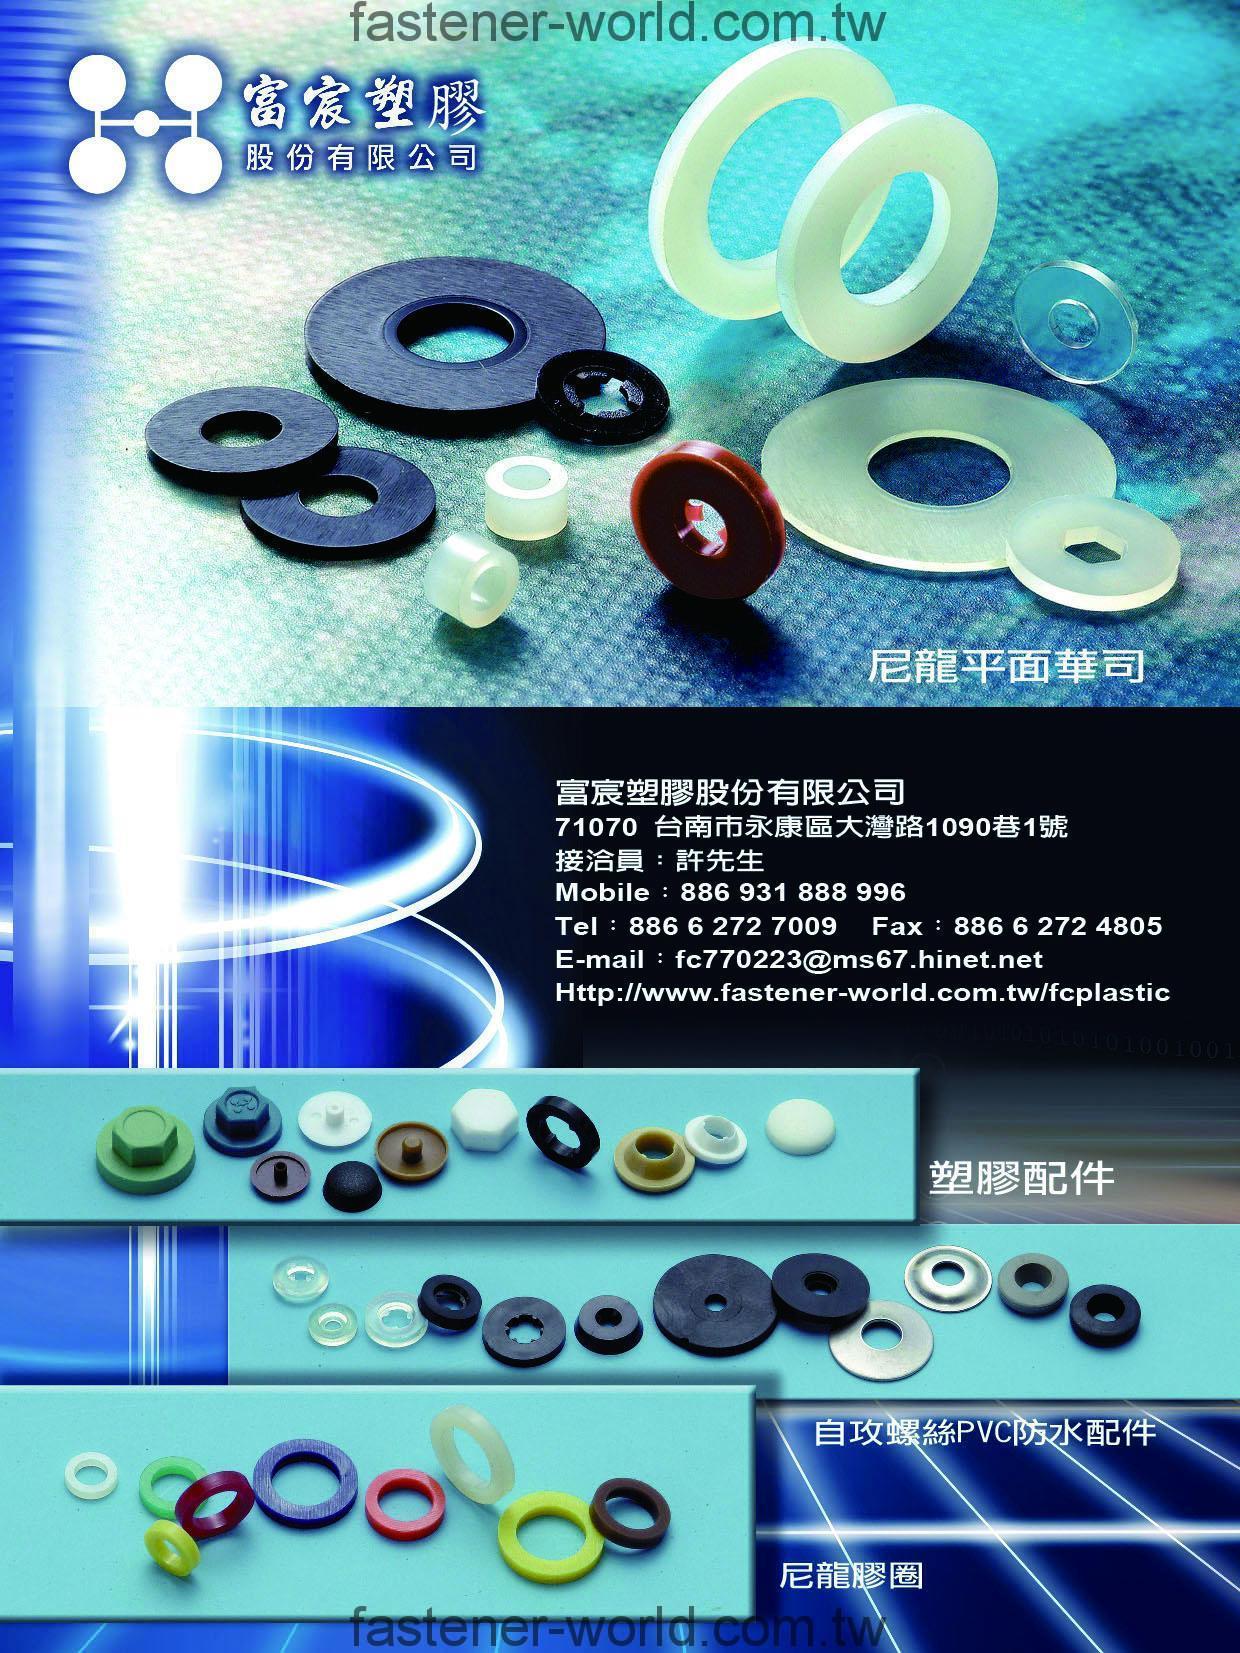 FU CHENG PLASTIC CO., LTD. _Online Catalogues